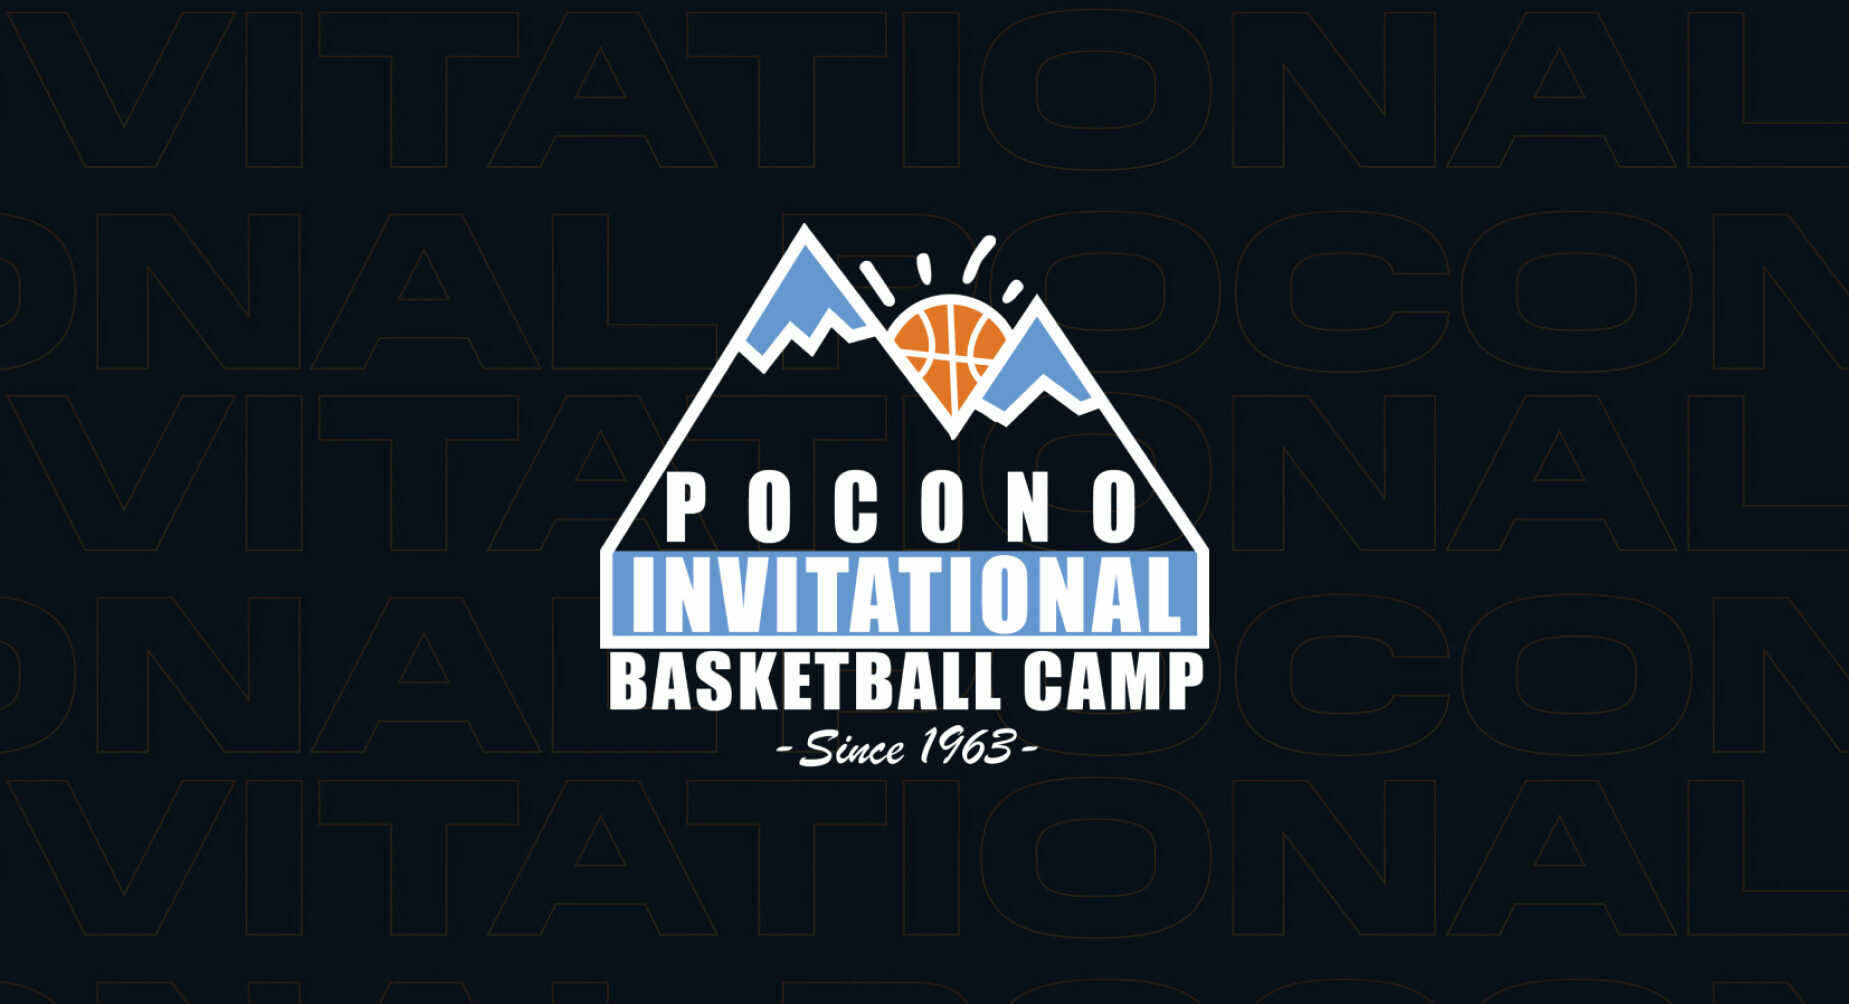 Staff Pocono Invitational Basketball Camp